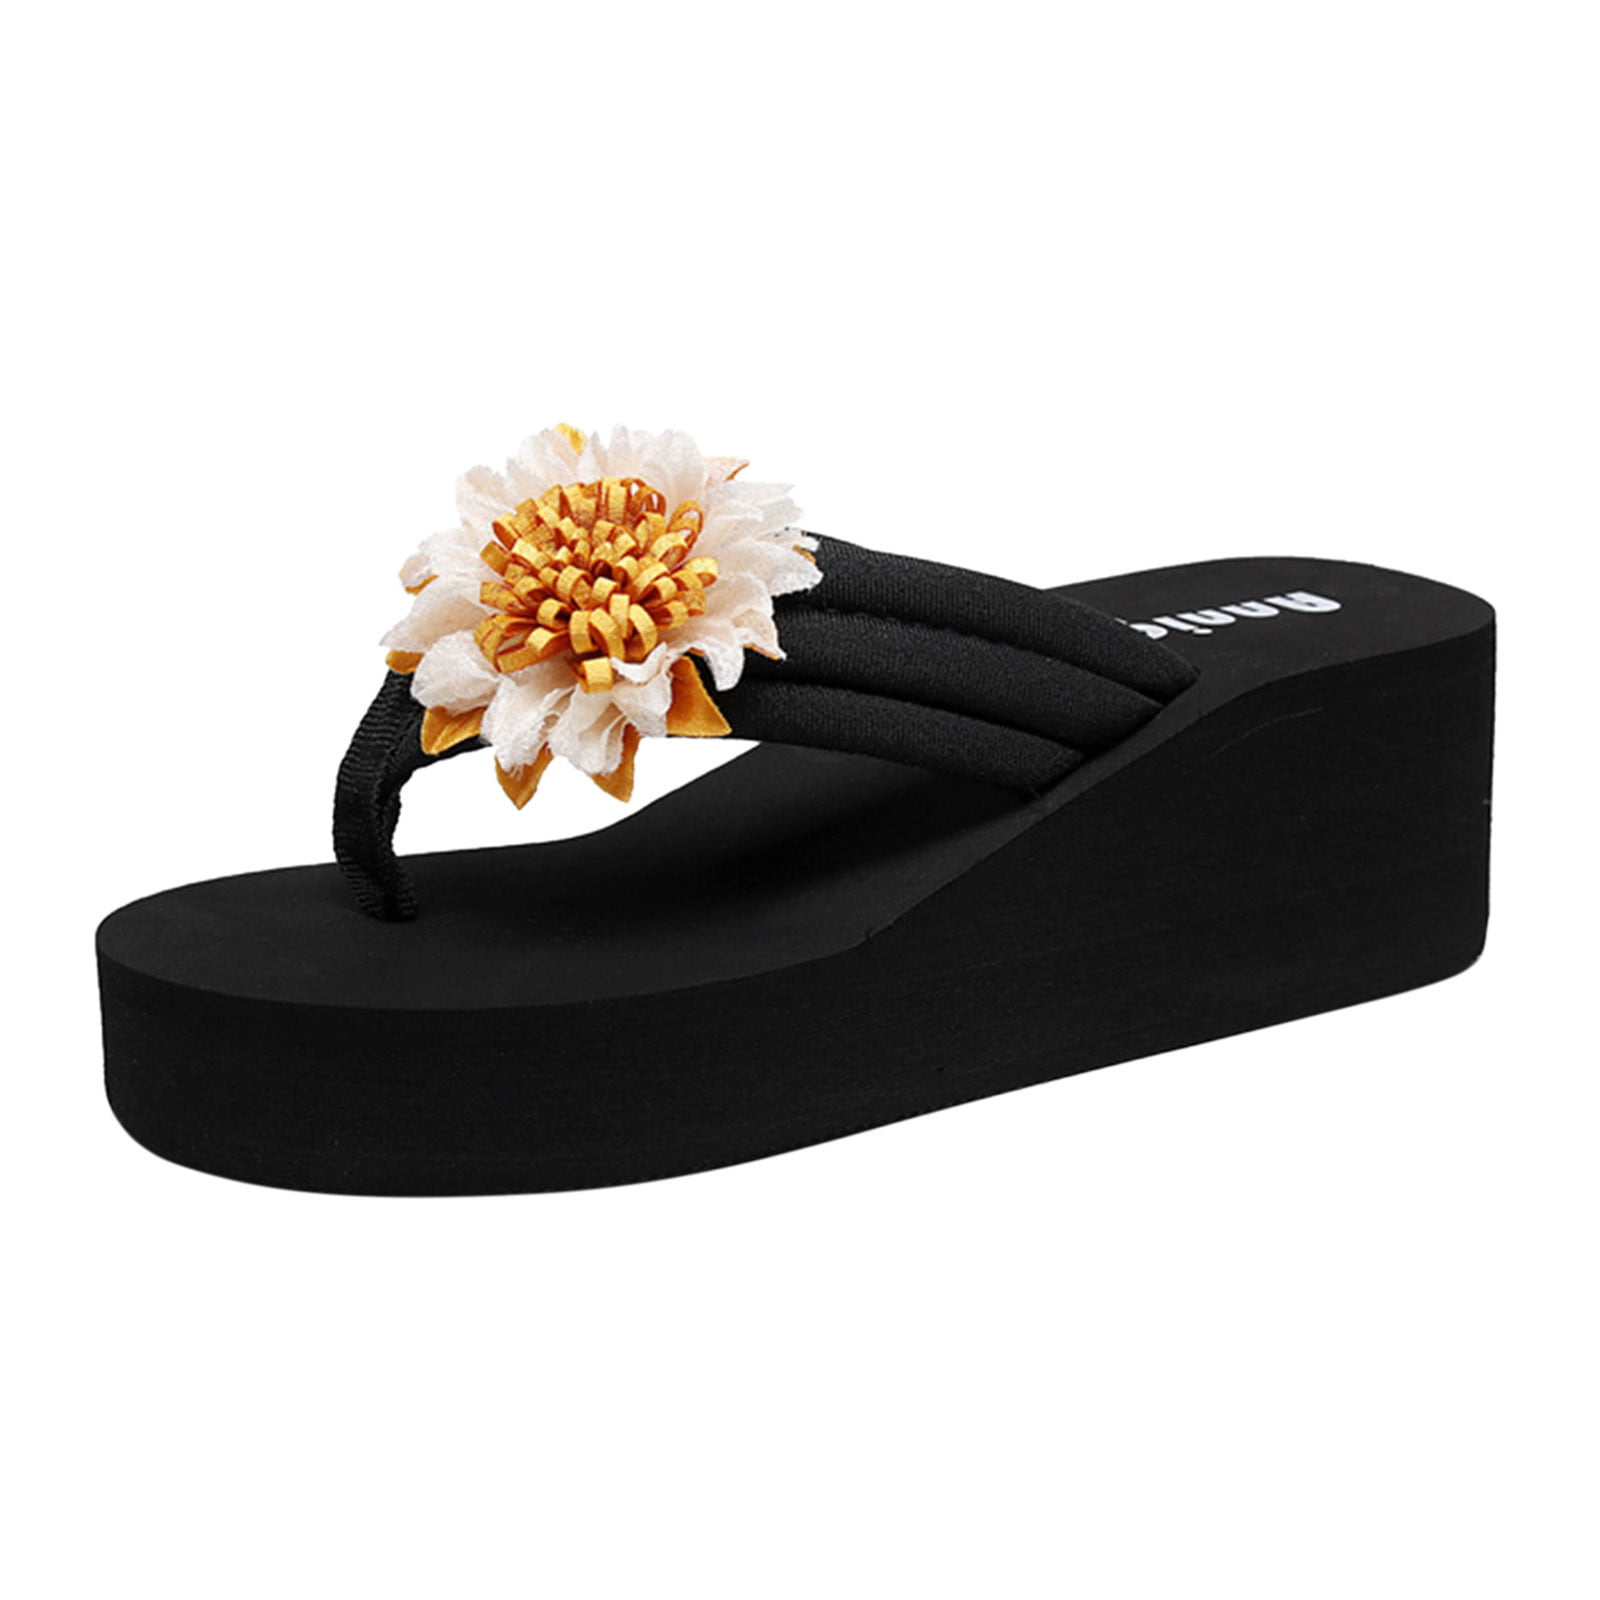 Pimfylm Bunny Slippers For Women Kandi Slip-On Adjustable Sandal for ...